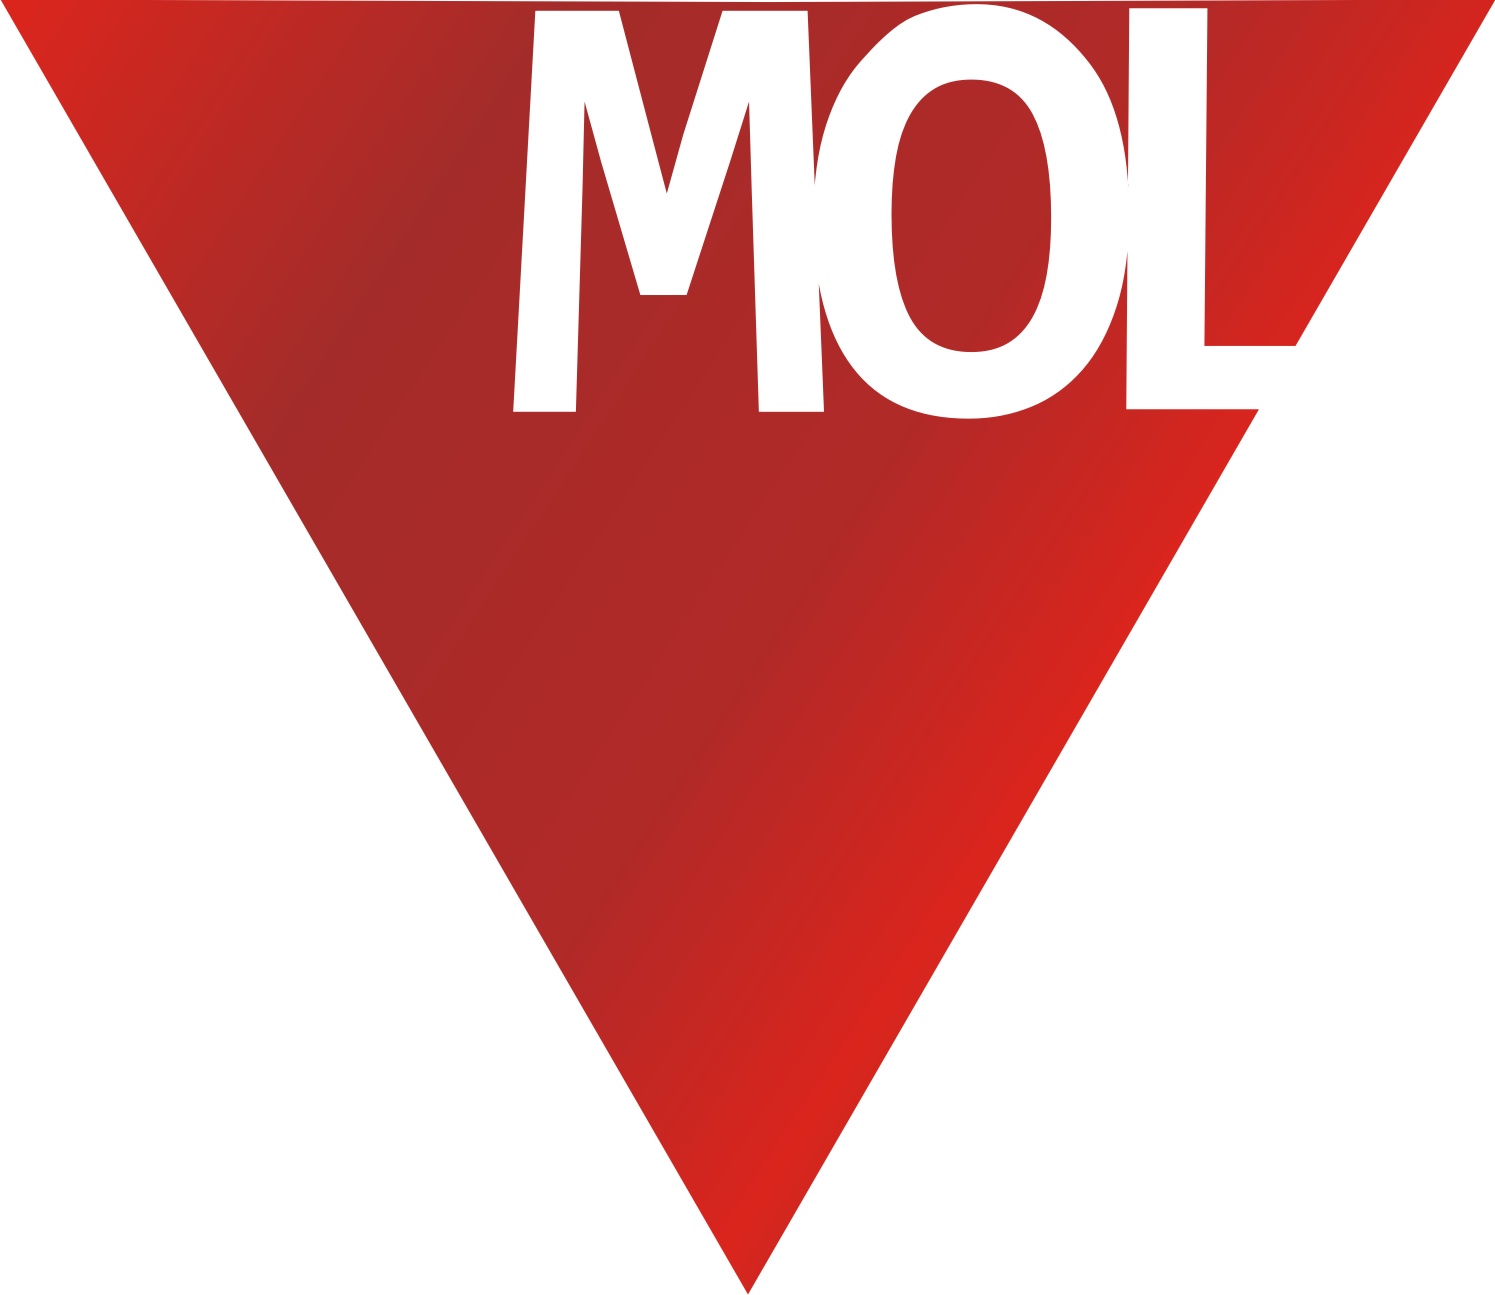 A Mol megkapja a visszafizetett állami támogatást